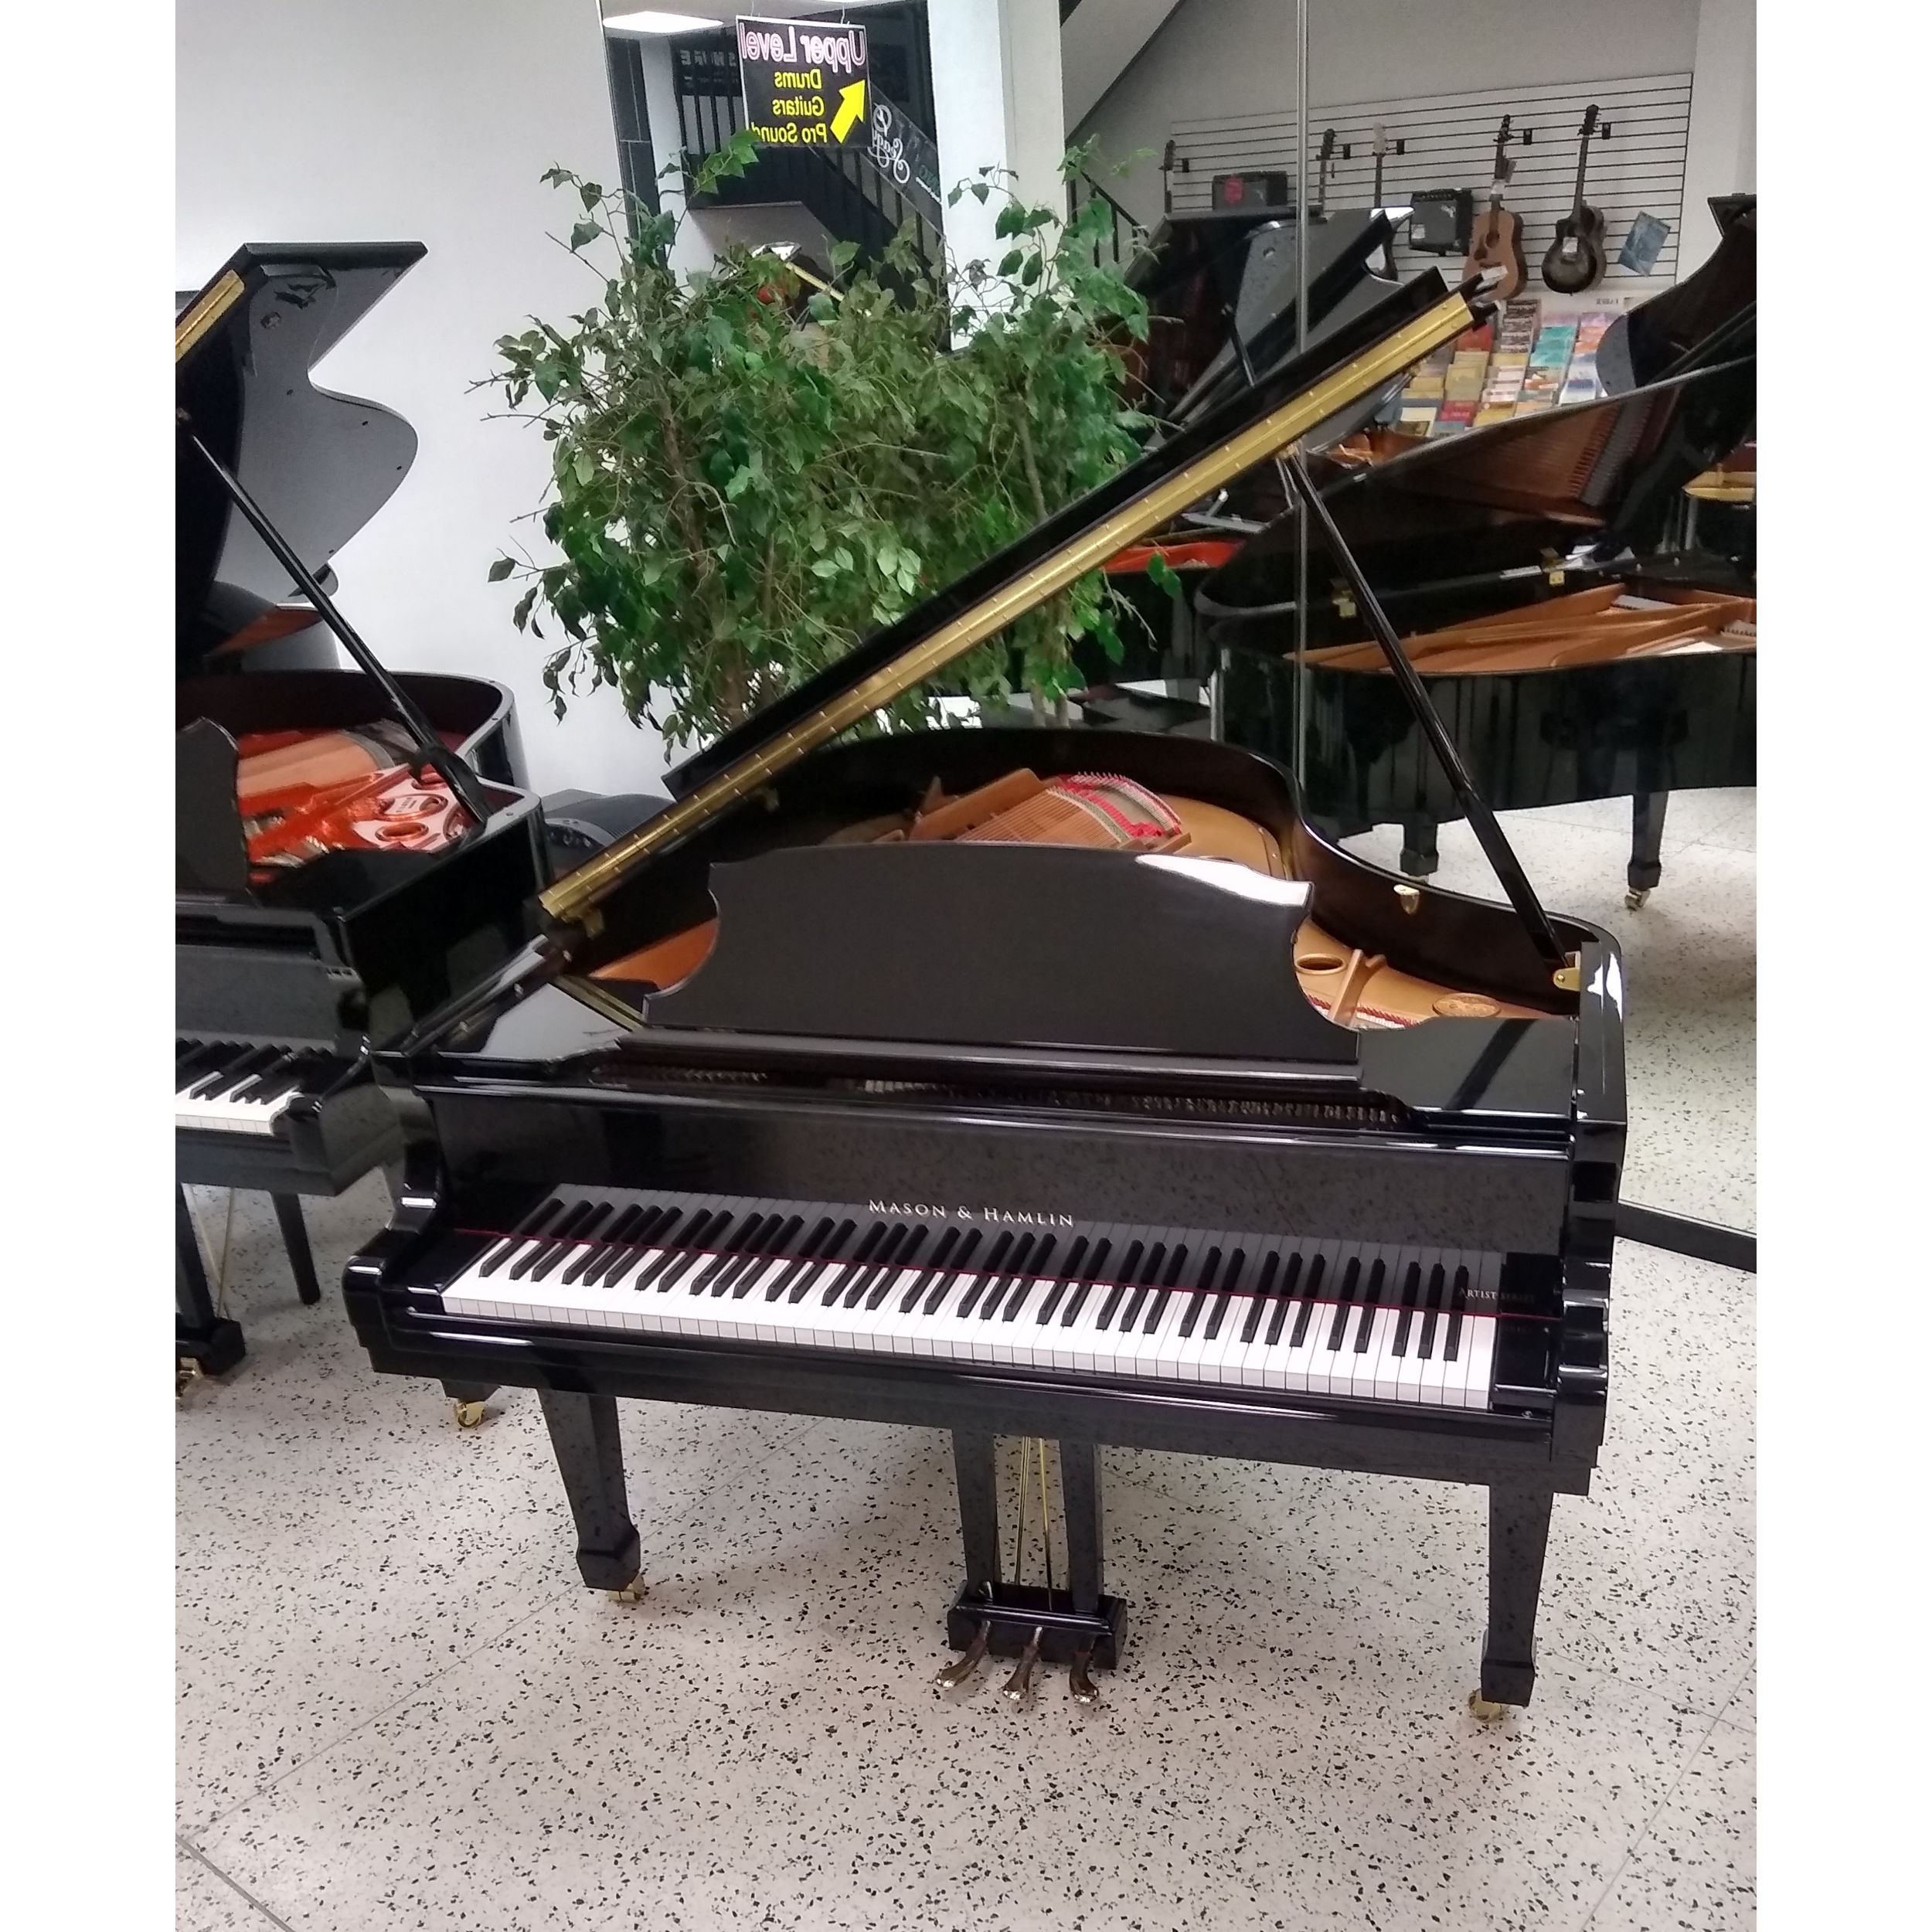 Mason & Hamlin Classic Grand Piano 188